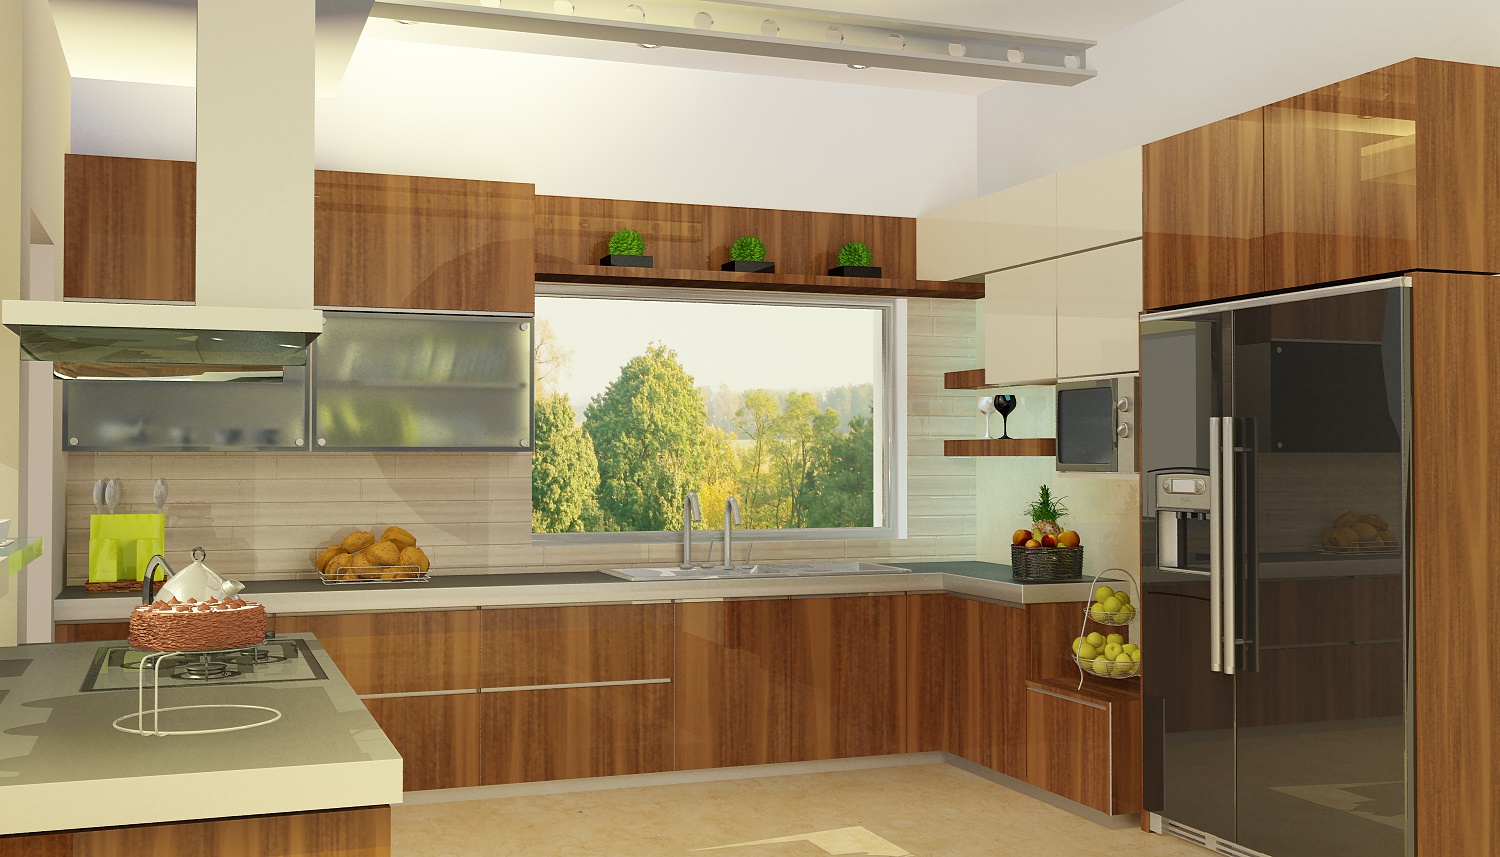 High Definition: Modern Light Kitchen design by HD interior design